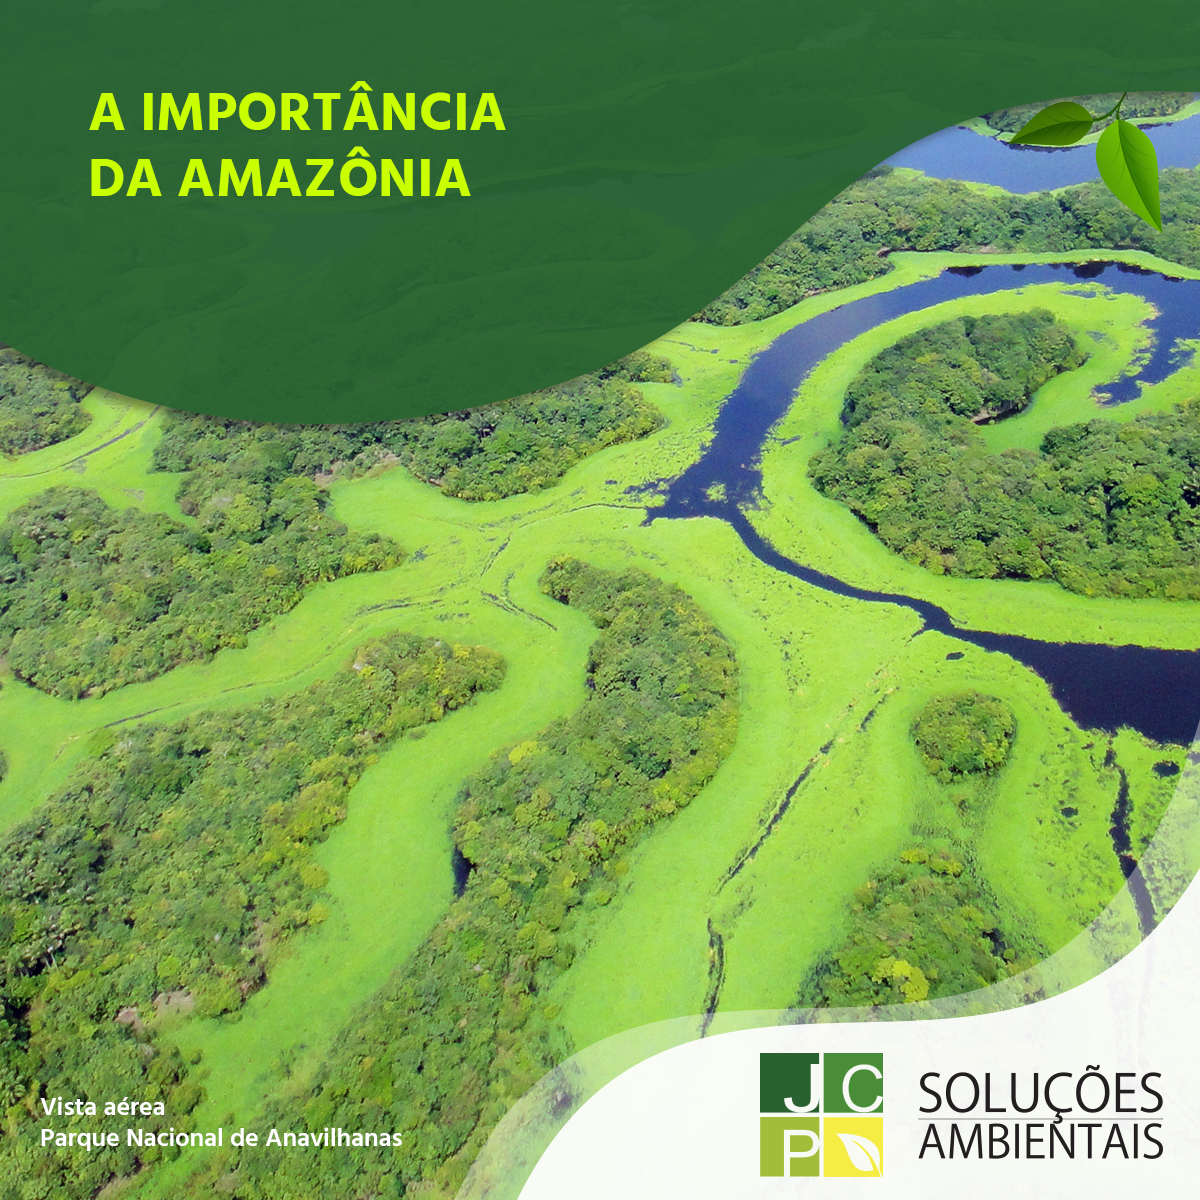 Curiosidades sobre o Pau-brasil e A importância da Amazônia | JCP Soluções Ambientais Campinas